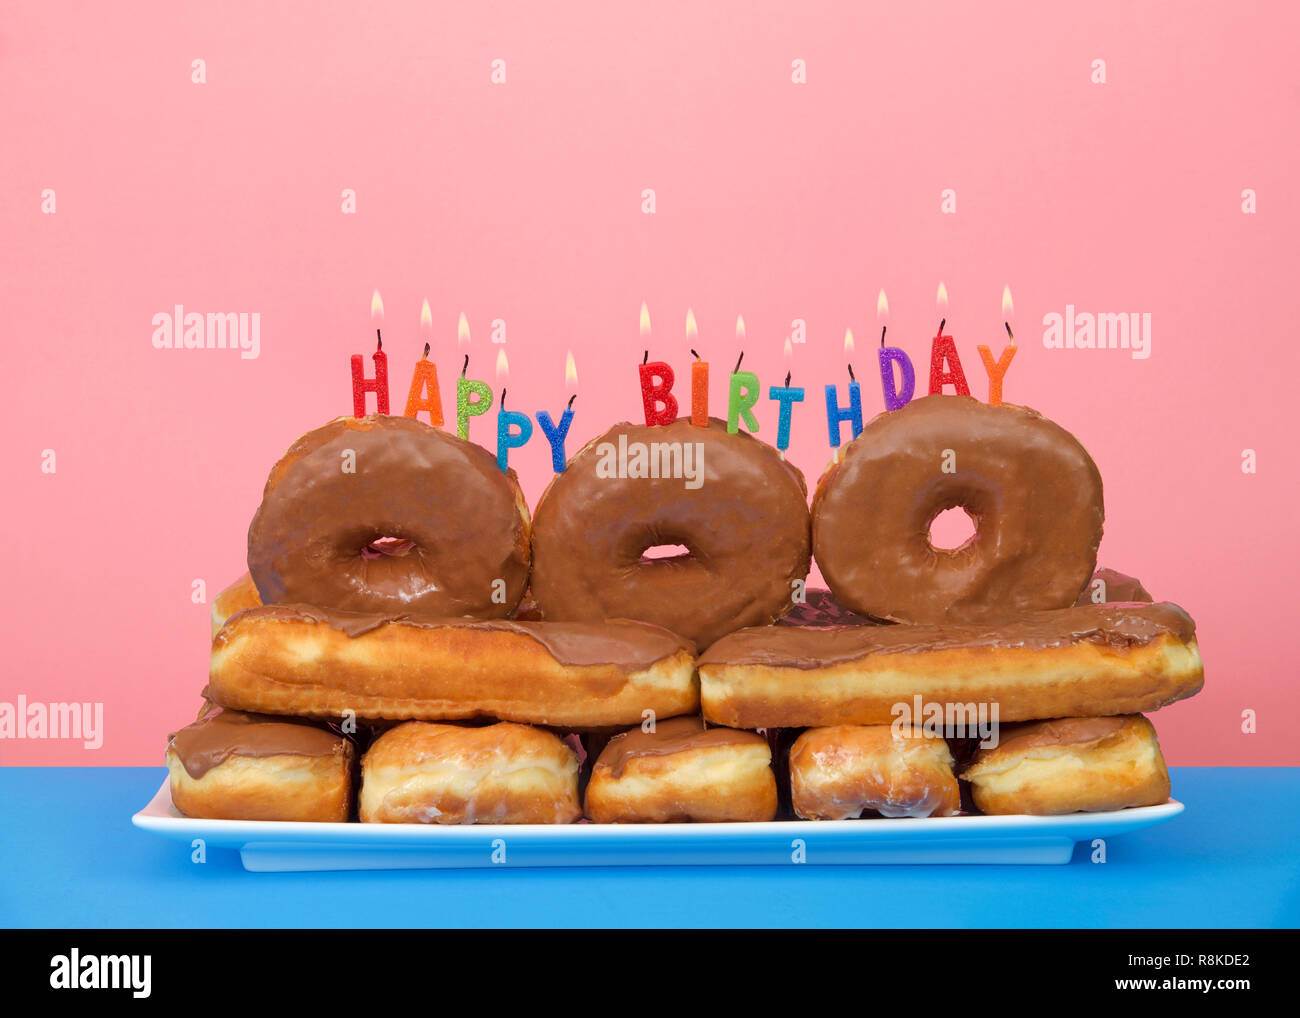 Schokolade Donuts auf einer rechteckigen Platte mit Happy Birthday Kerzen  brennen auf der Oberseite, blau Tisch rosa Hintergrund gestapelt. Donut  Liebhaber Geburtstag Stockfotografie - Alamy